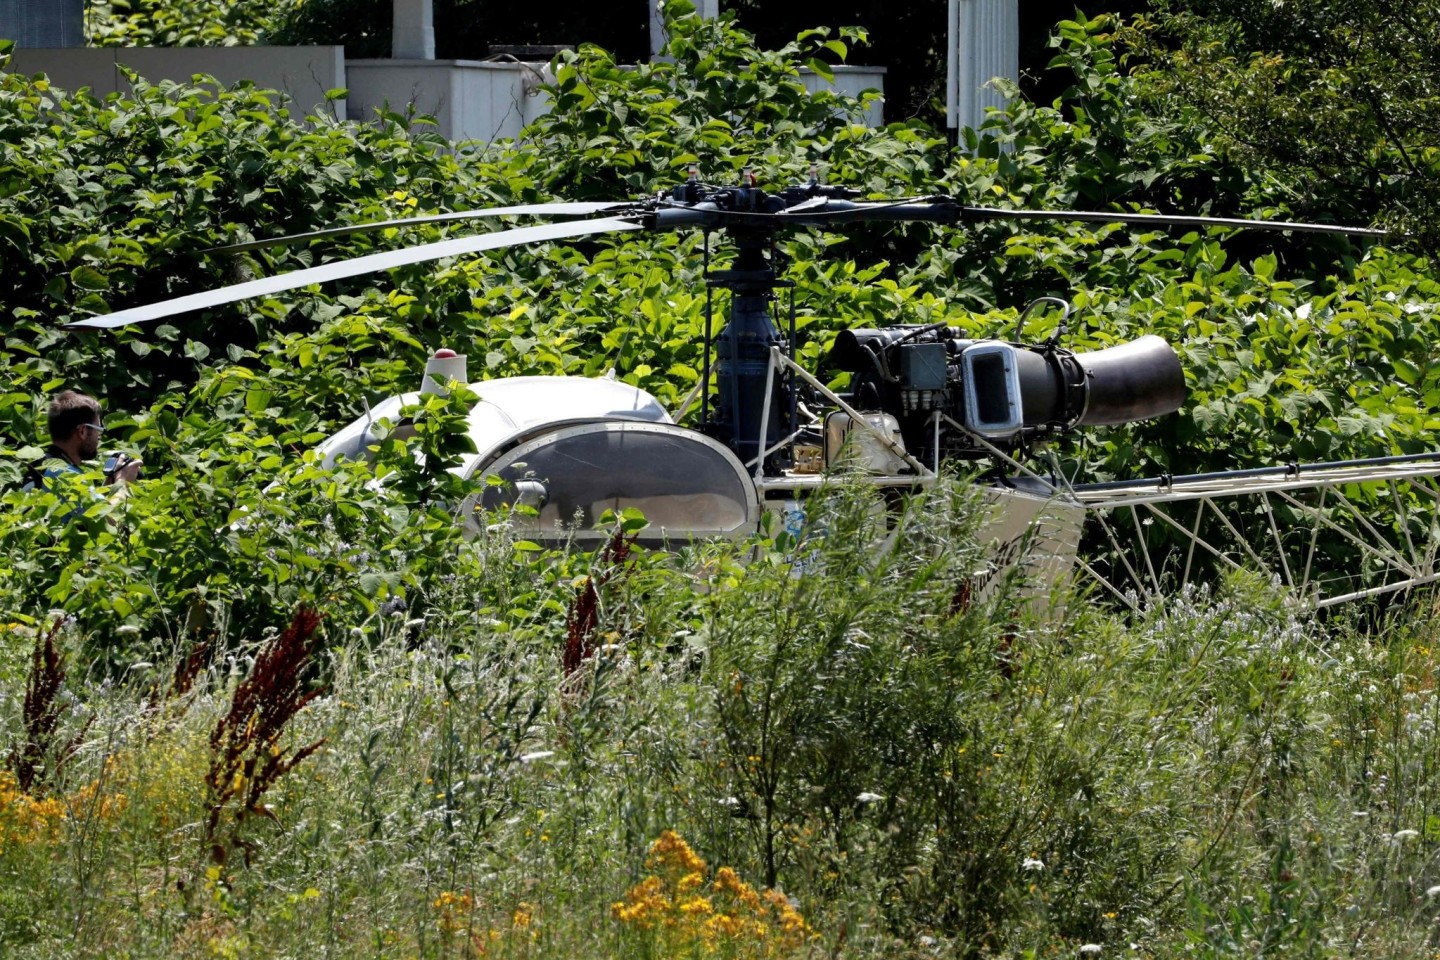 Ein Hubschrauber Alouette II, mit dem der Kriminelle Redoine Faid aus dem Gefängnis geflohen ist, steht verlassen in der Landschaft.